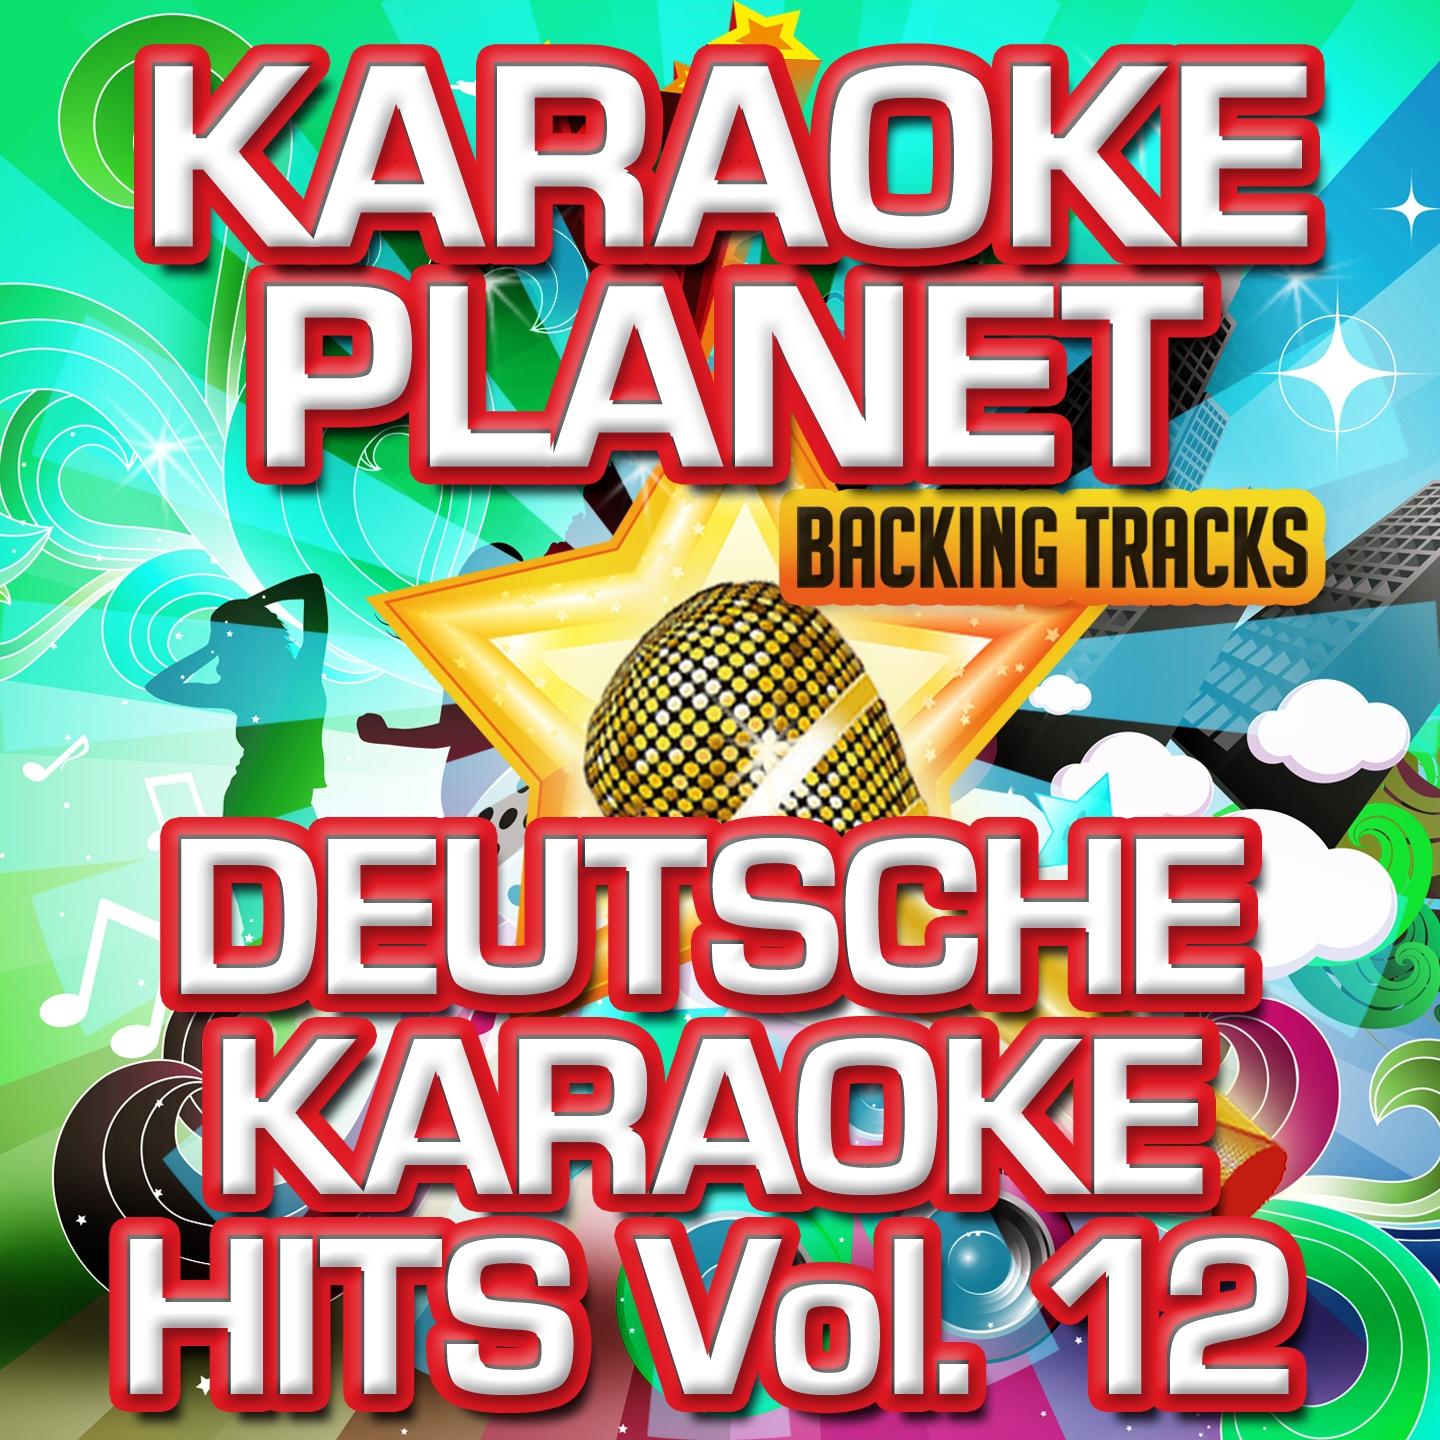 Deutsche Karaoke Hits, Vol. 12